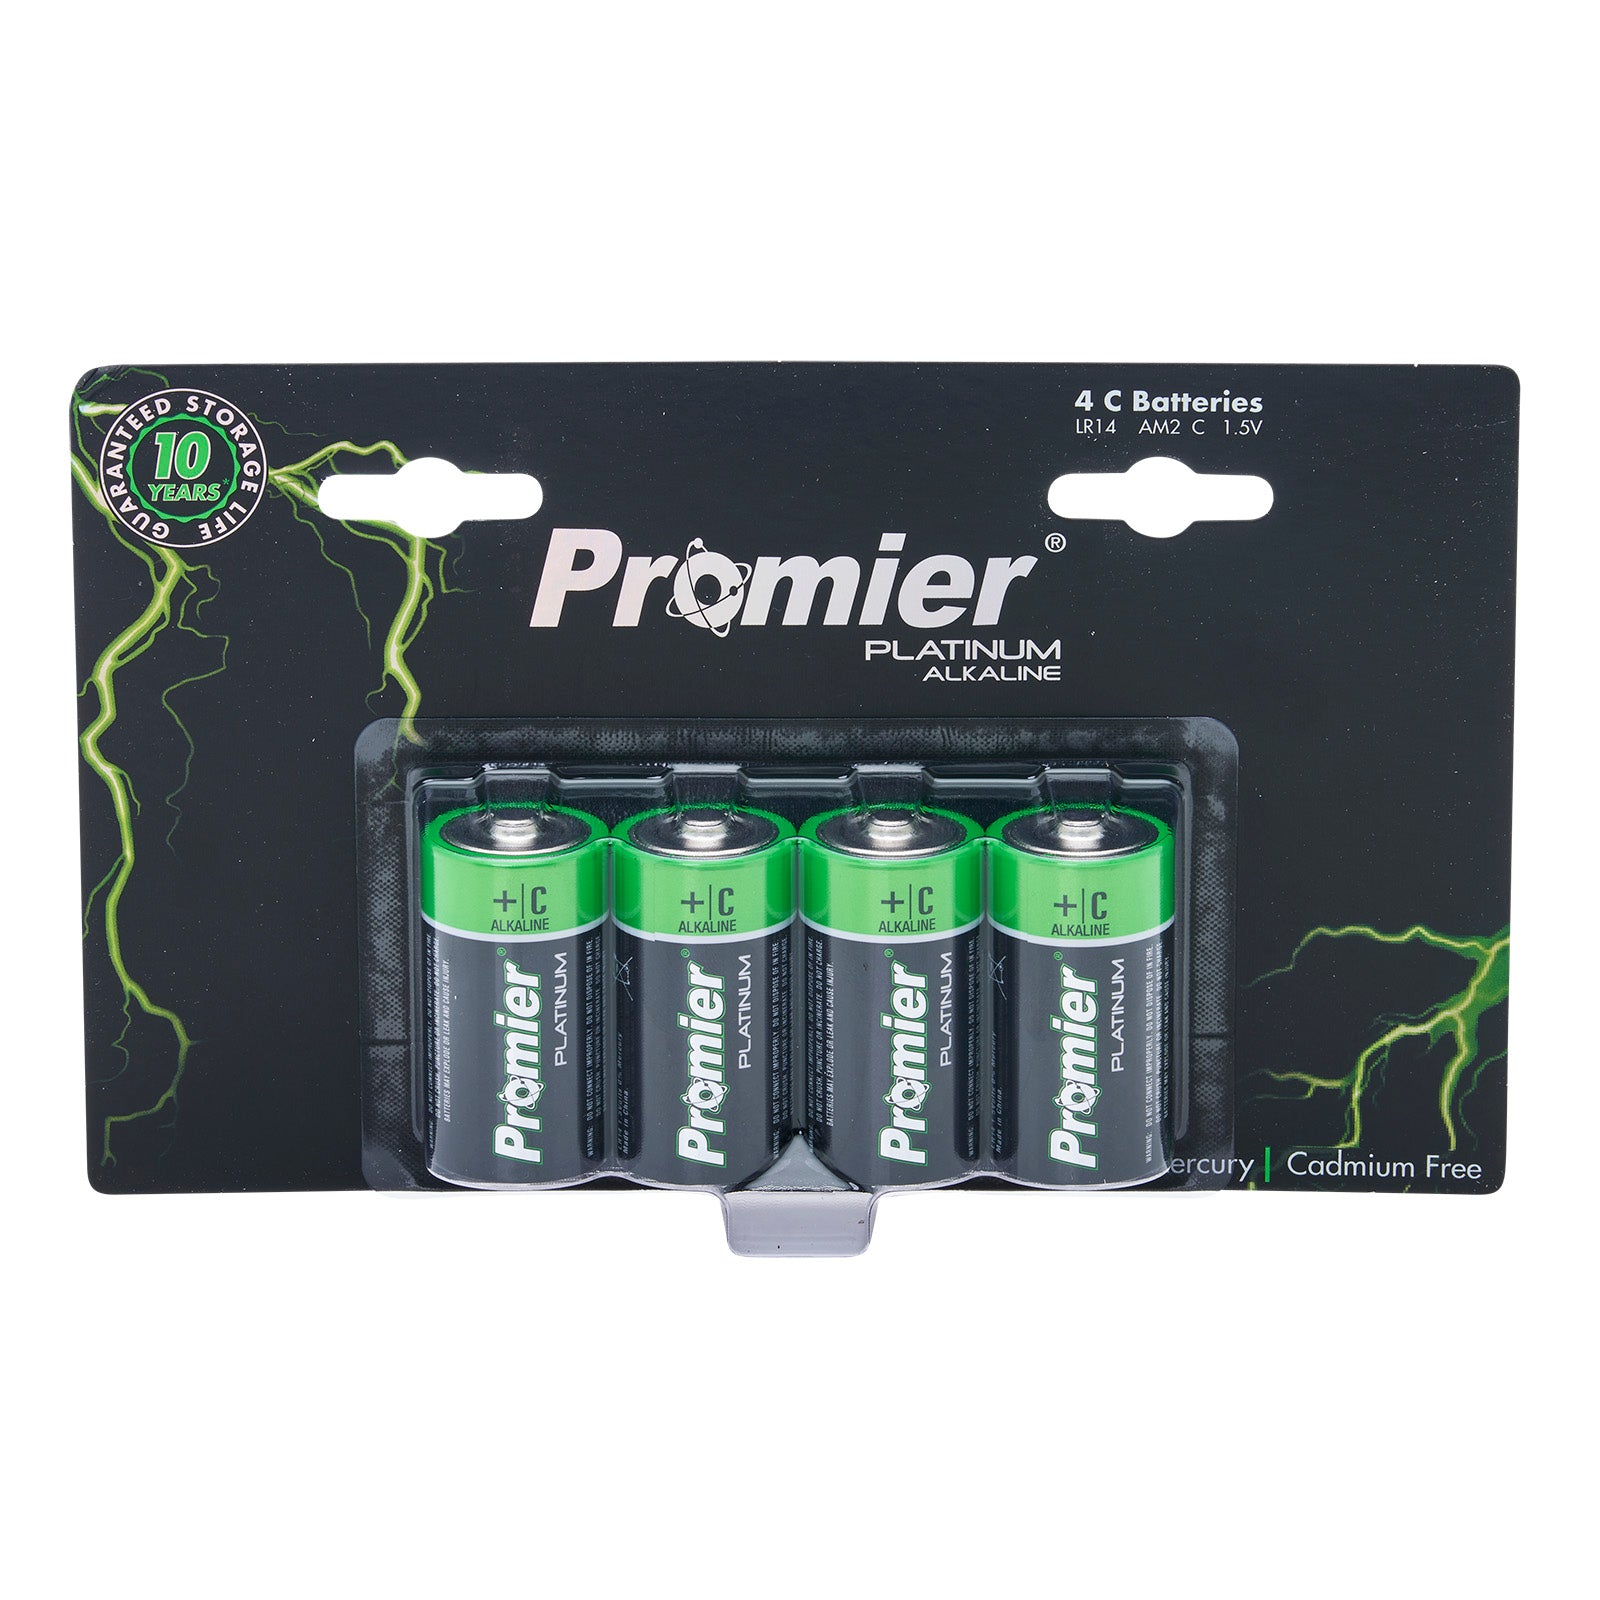 Promier® C Alkaline 4 Pack